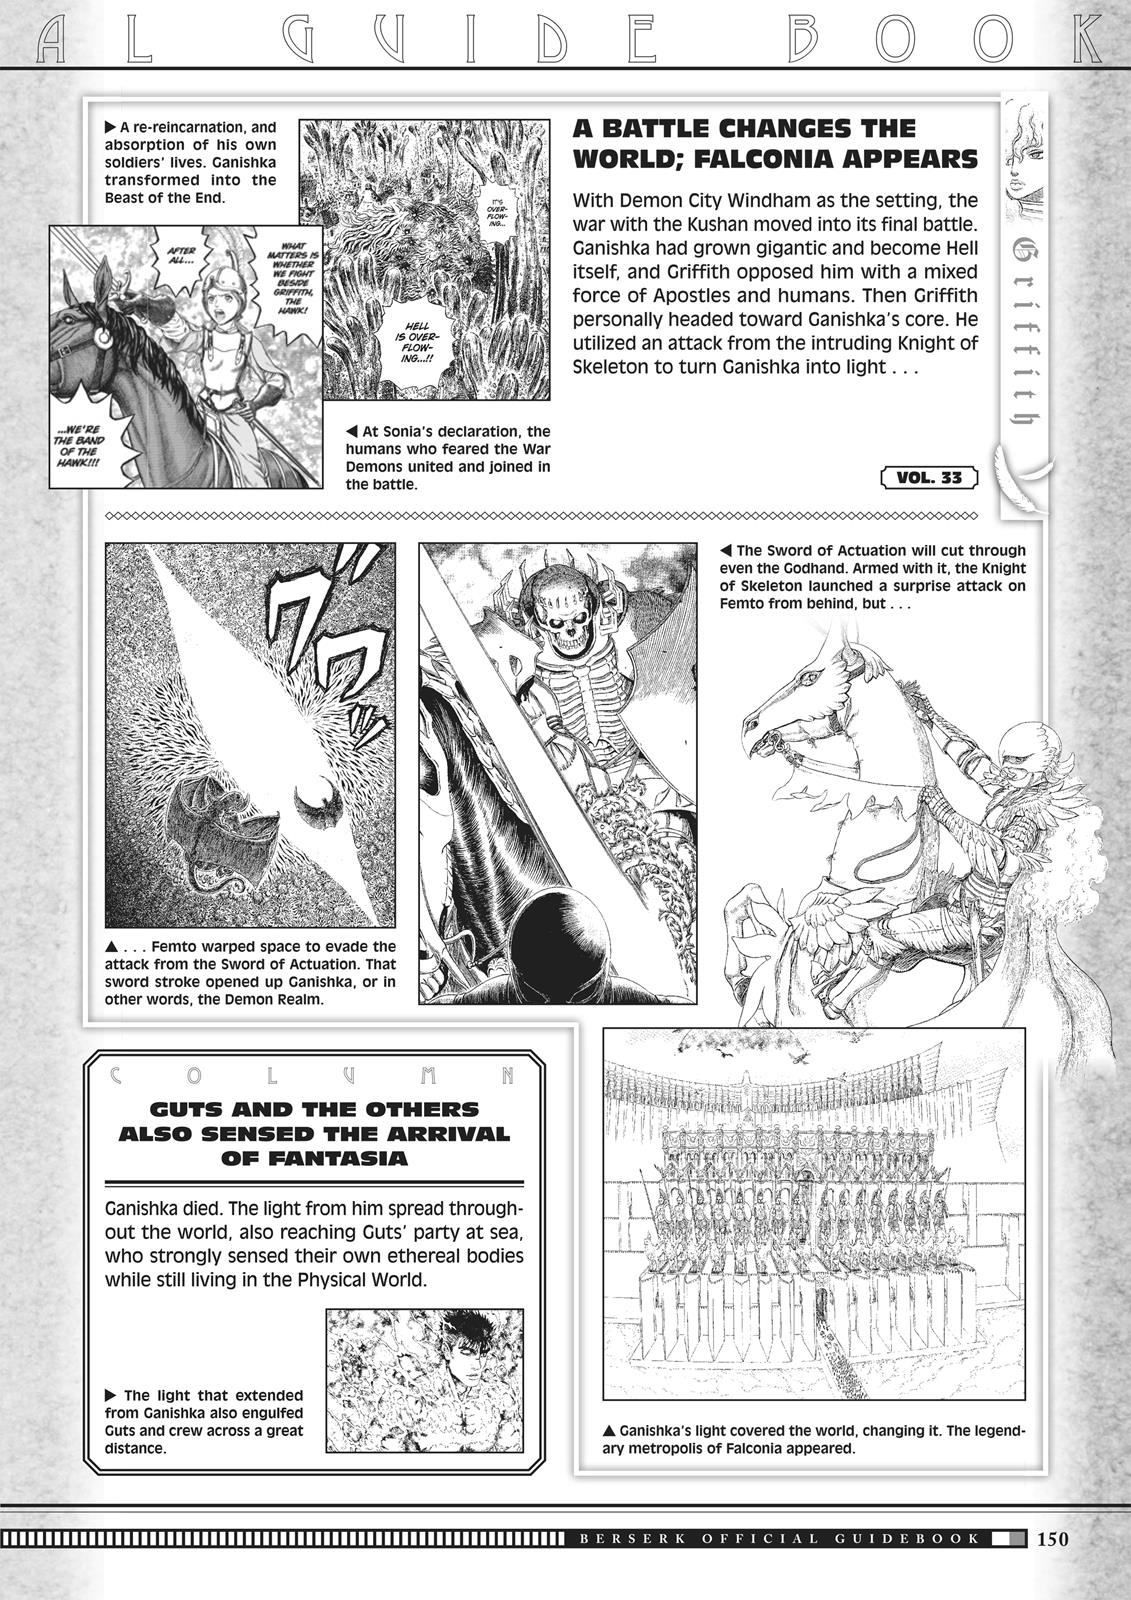 Berserk Manga Chapter 350.5 image 148